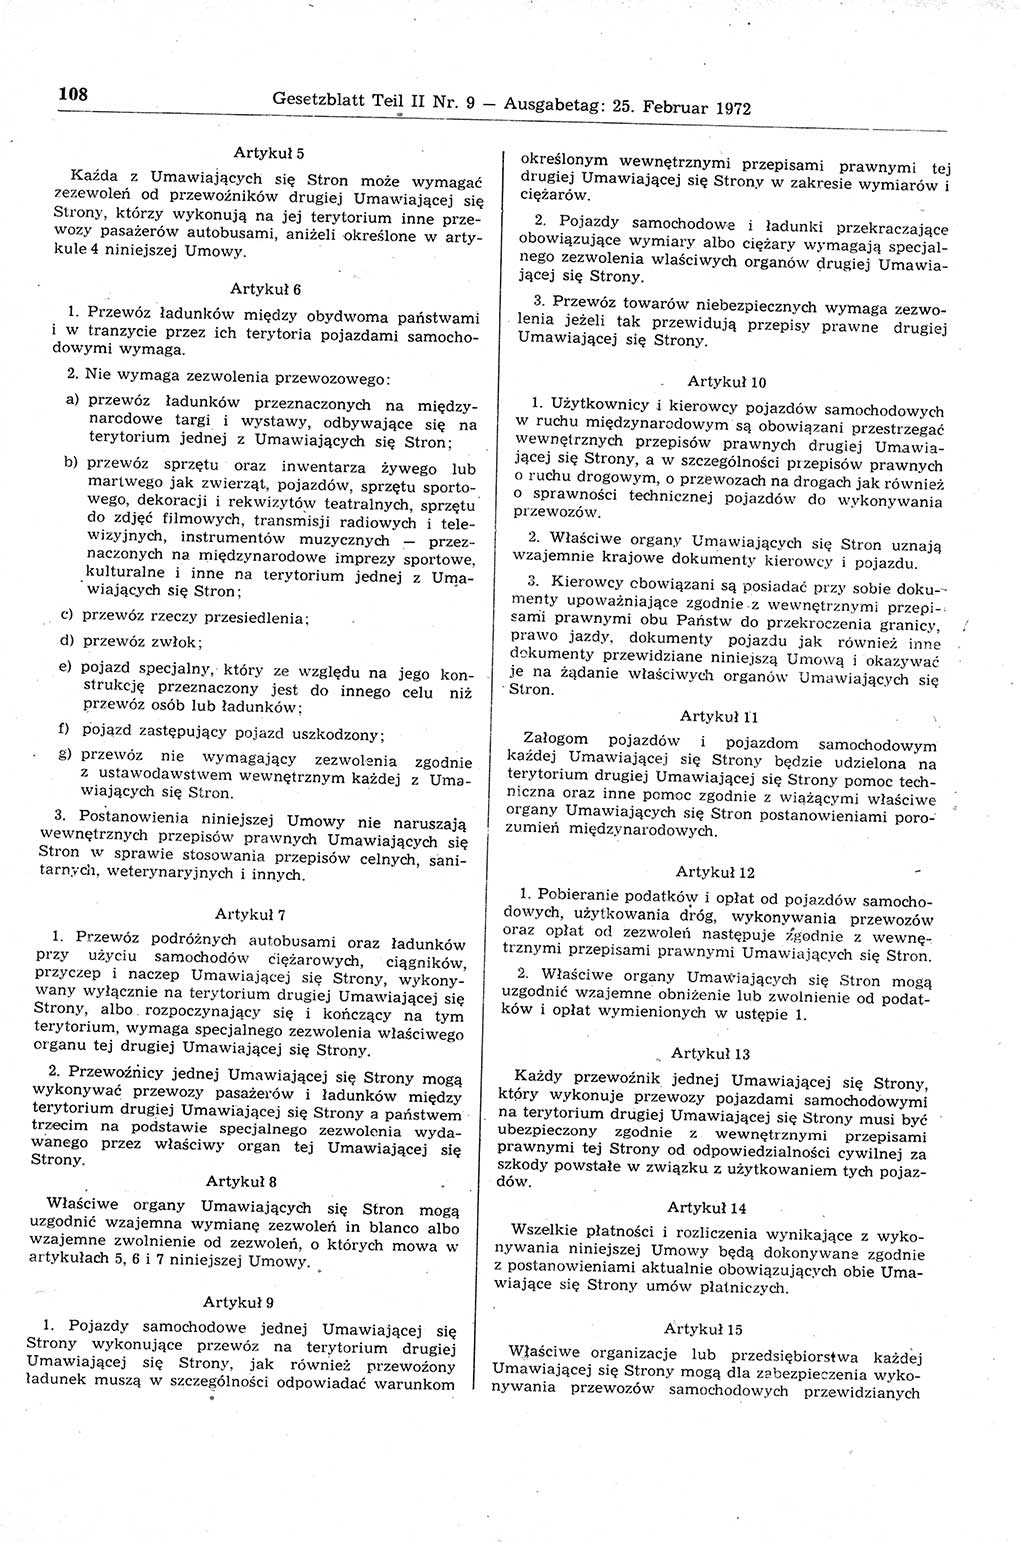 Gesetzblatt (GBl.) der Deutschen Demokratischen Republik (DDR) Teil ⅠⅠ 1972, Seite 108 (GBl. DDR ⅠⅠ 1972, S. 108)